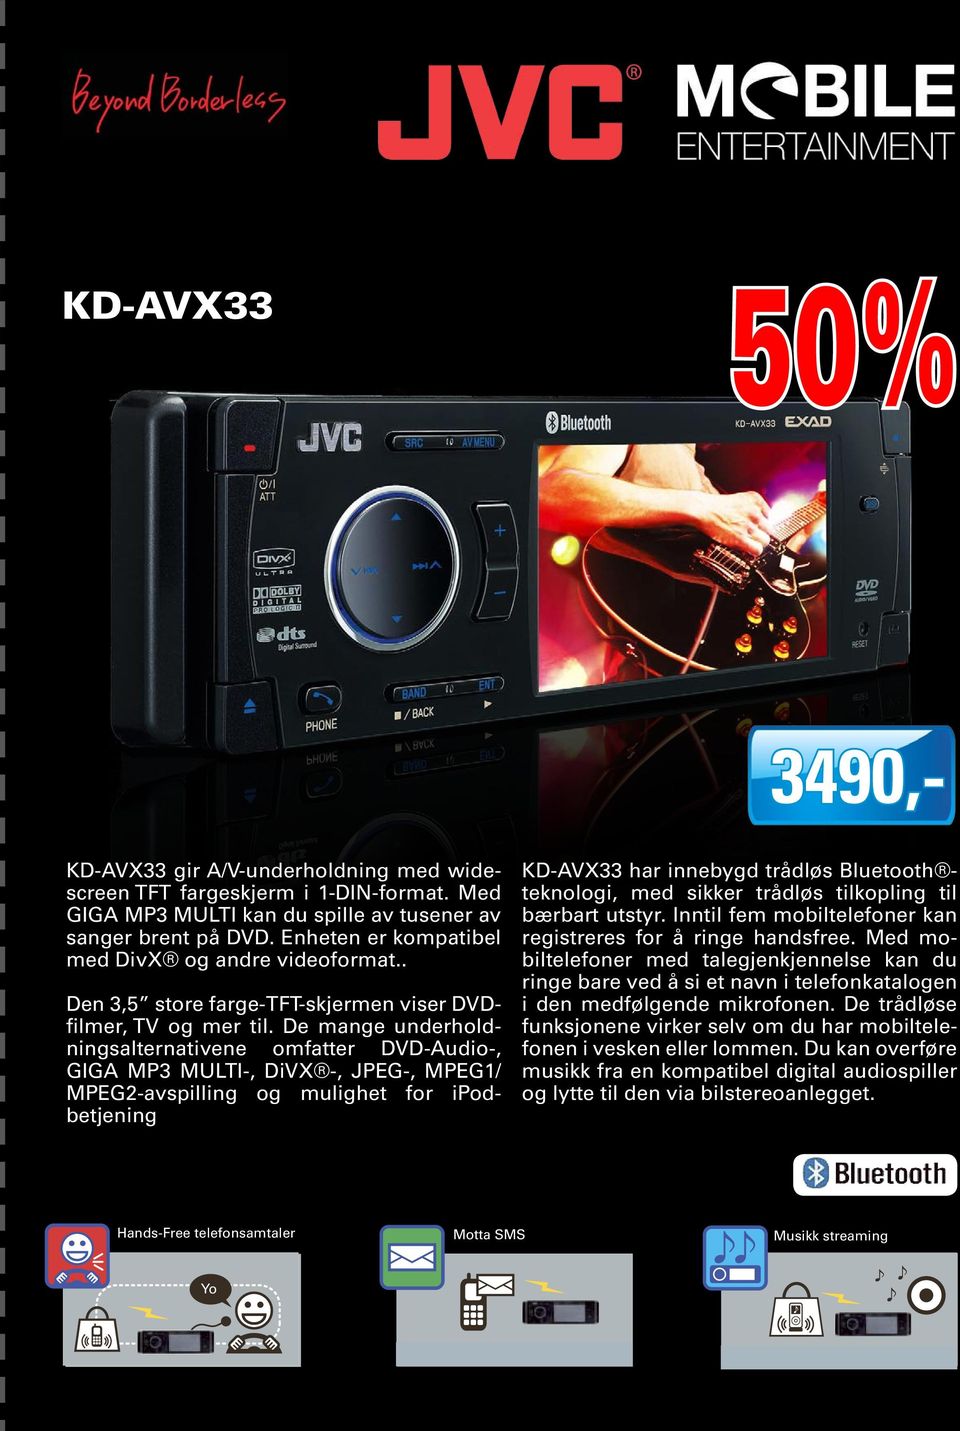 De mange underholdningsalternativene omfatter DVD-Audio-, GIGA MP3 MULTI-, DiVX -, JPEG-, MPEG1/ MPEG2-avspilling og mulighet for ipodbetjening KD-AVX33 har innebygd trådløs Bluetooth teknologi, med